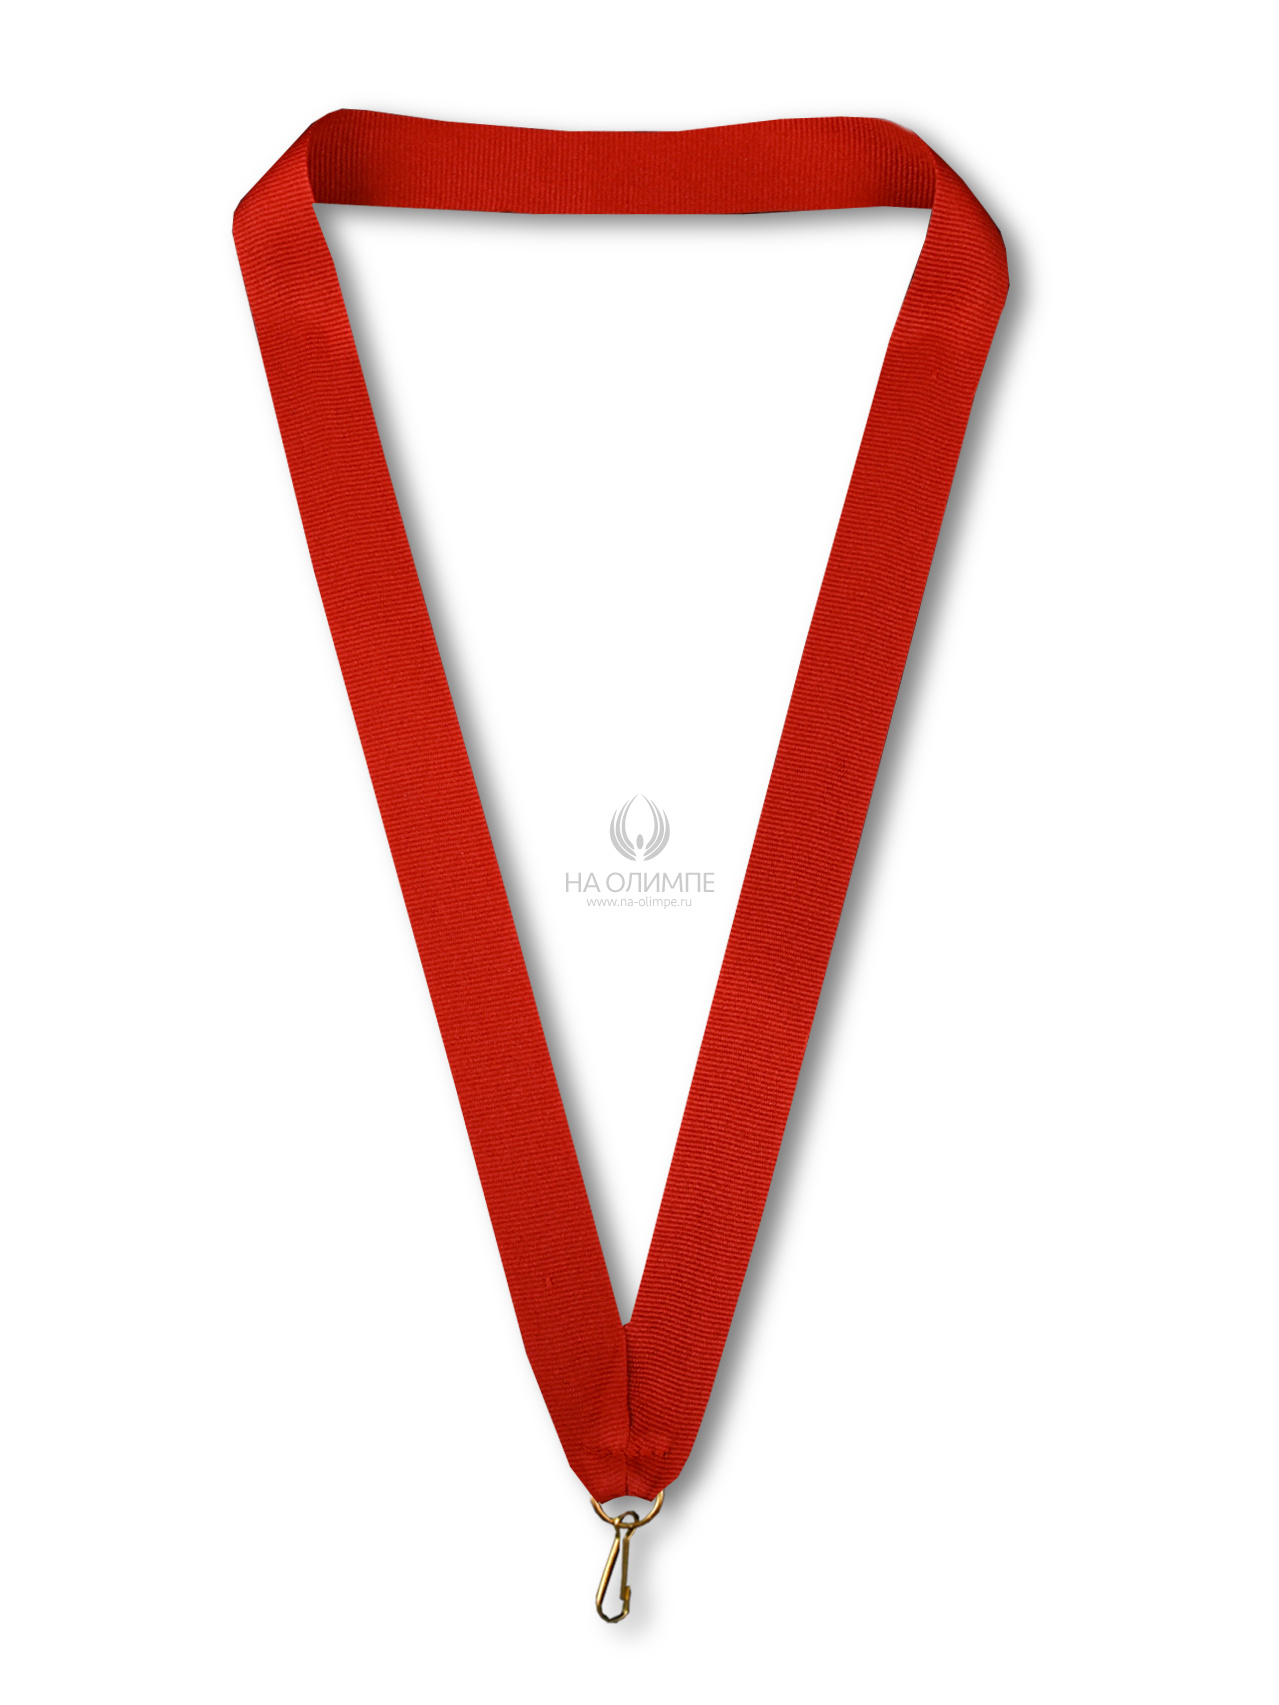 Лента для медали красная R 11мм, ширина ленты 11 мм